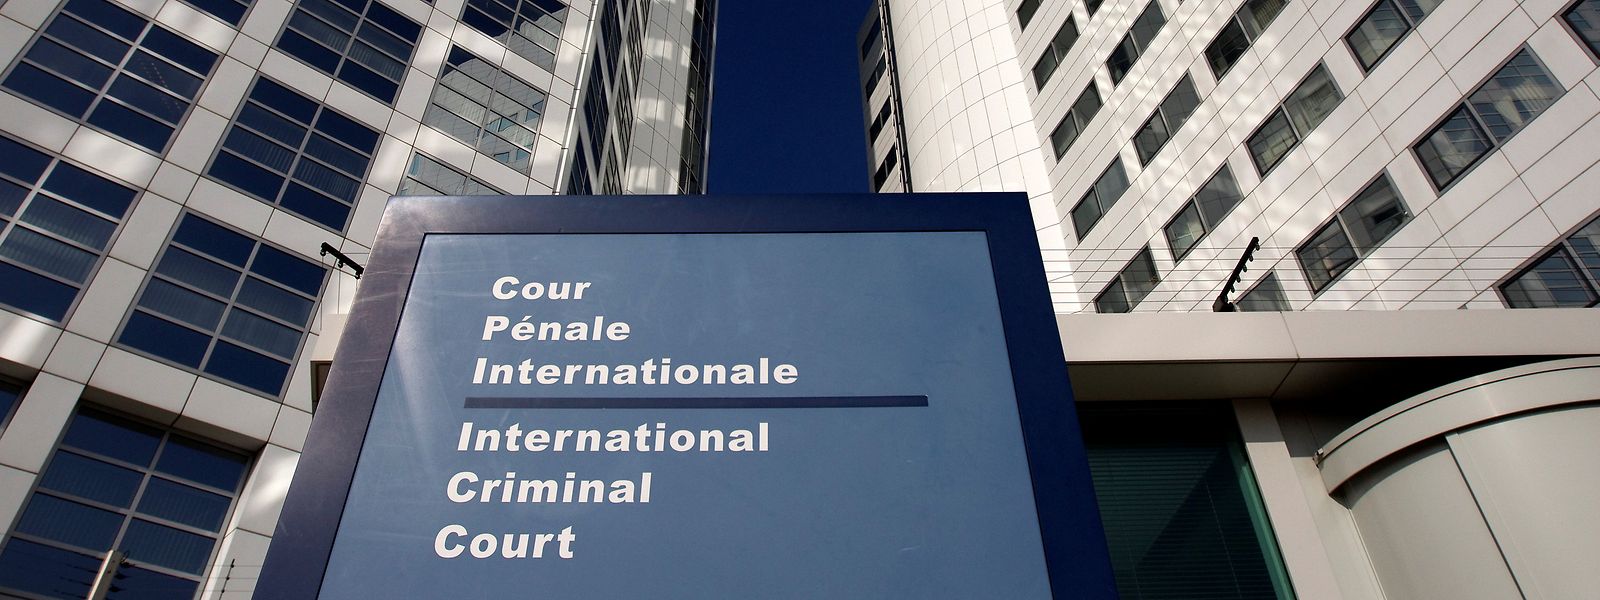 Der International Criminal Court (ICC) in Den Haag in den Niederlanden.